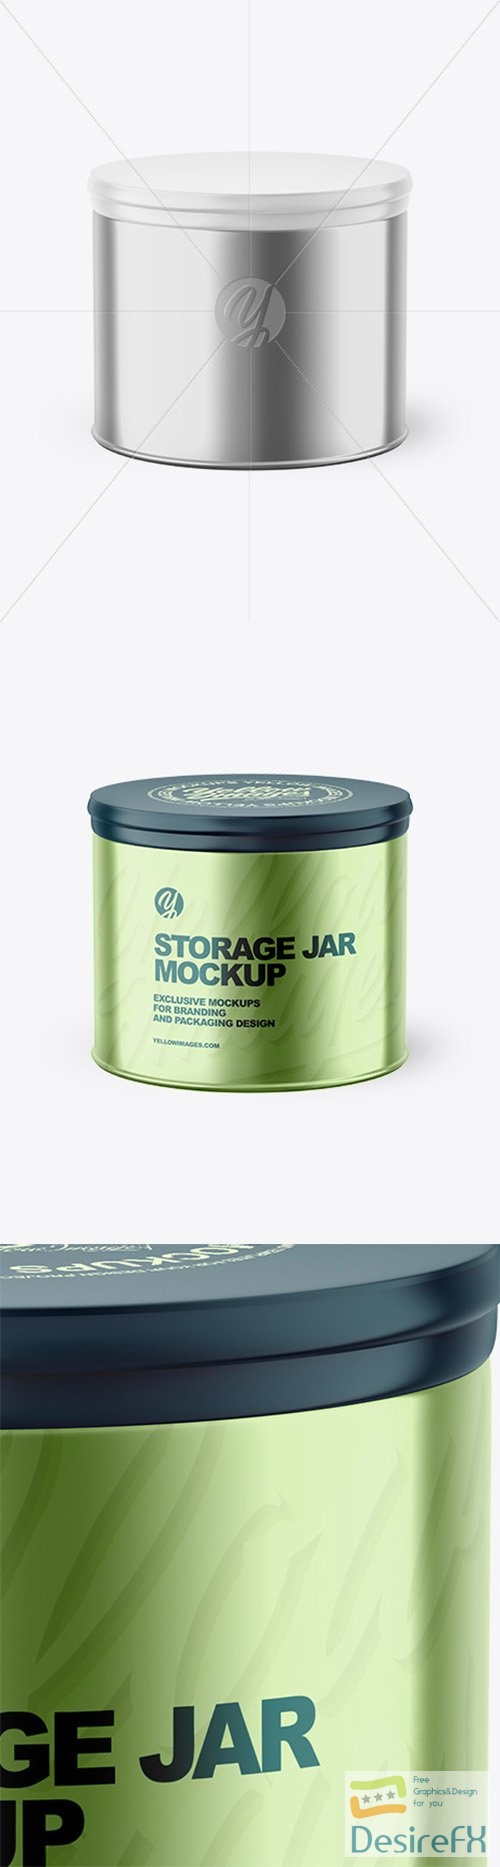 Metalliс Storage Jar Mockup 80369 TIF